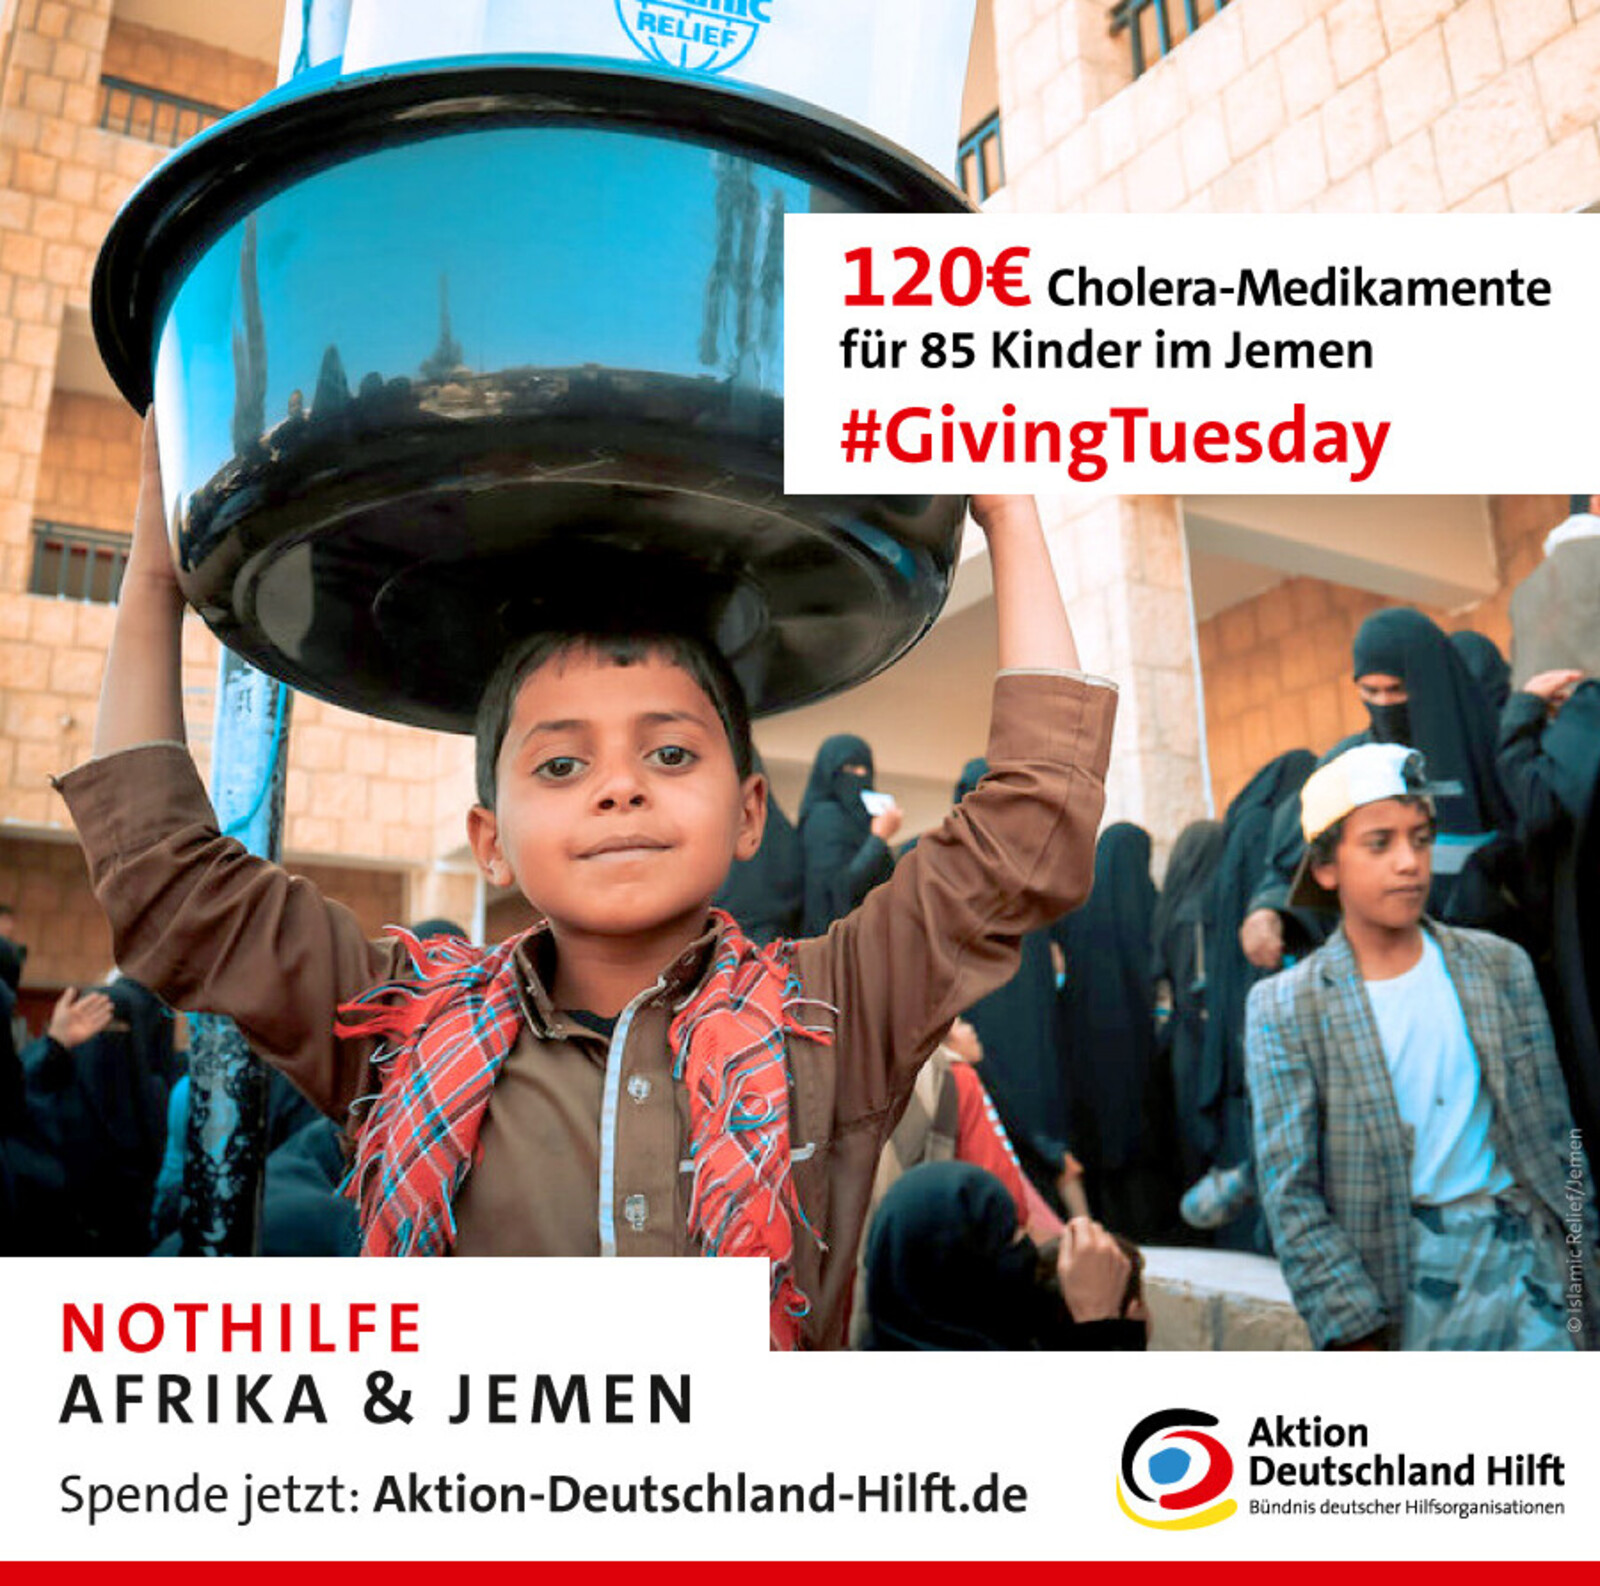 Die Menschen im Jemen leiden unter Hunger und Cholera: Helfen Sie uns zu helfen!